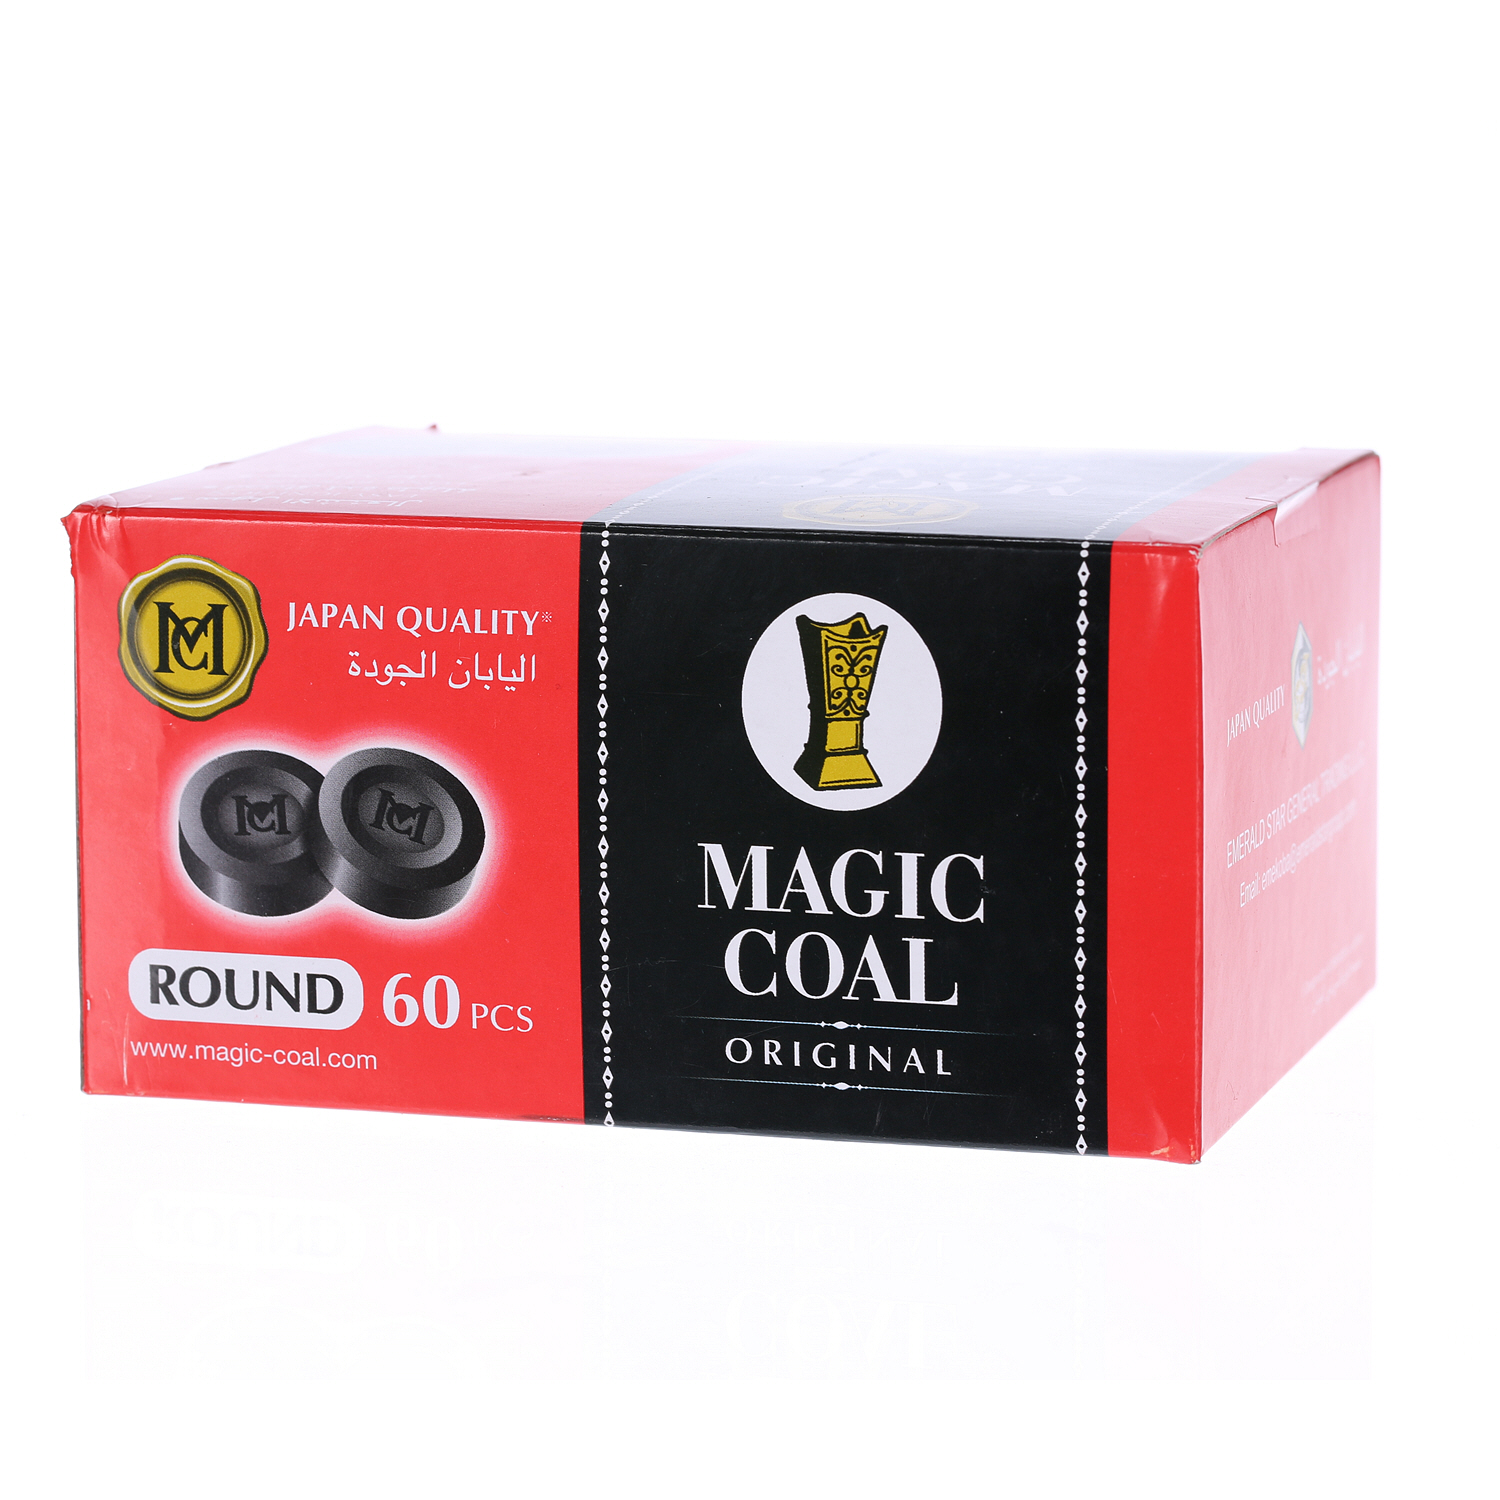 Magic Coal Charcoal Round 60PCS